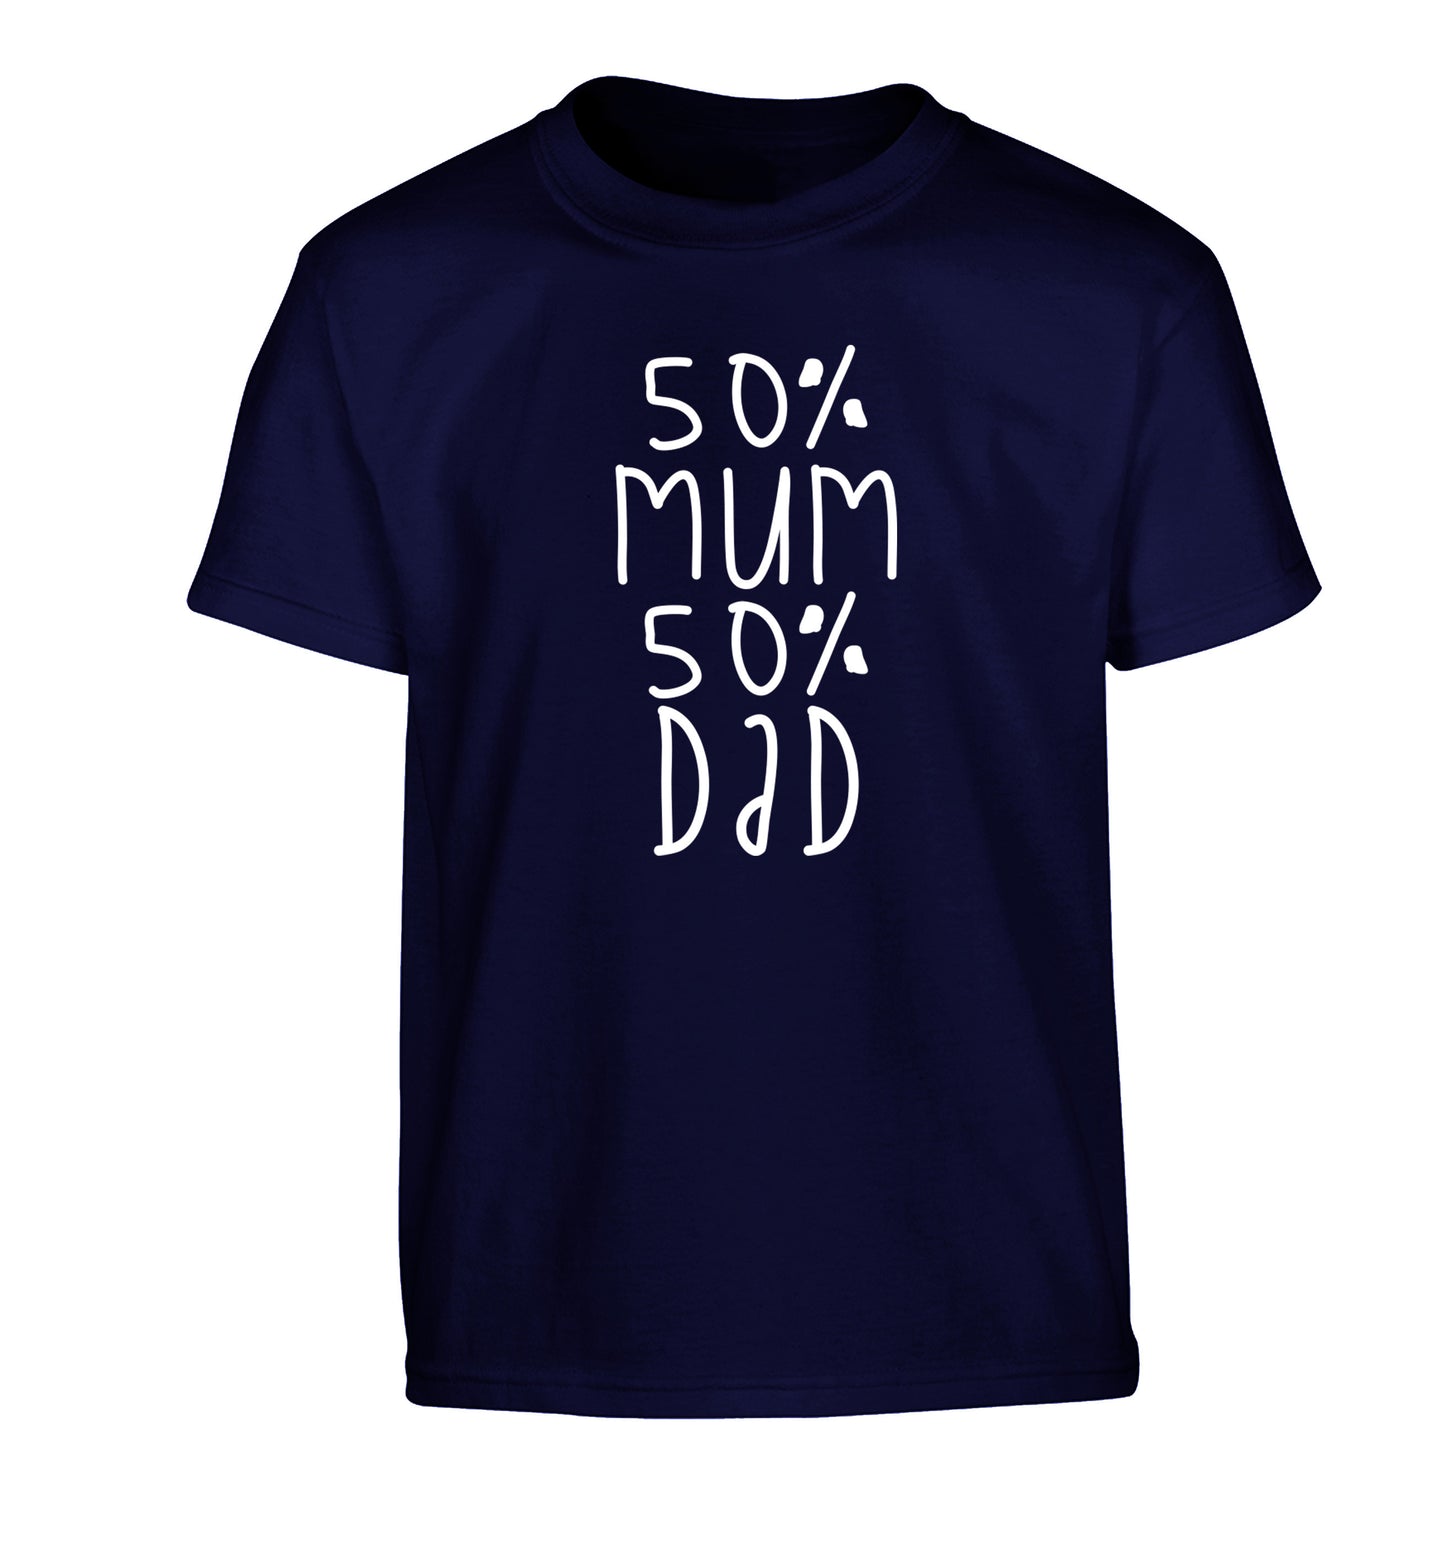 50% mum 50% dad Children's navy Tshirt 12-14 Years